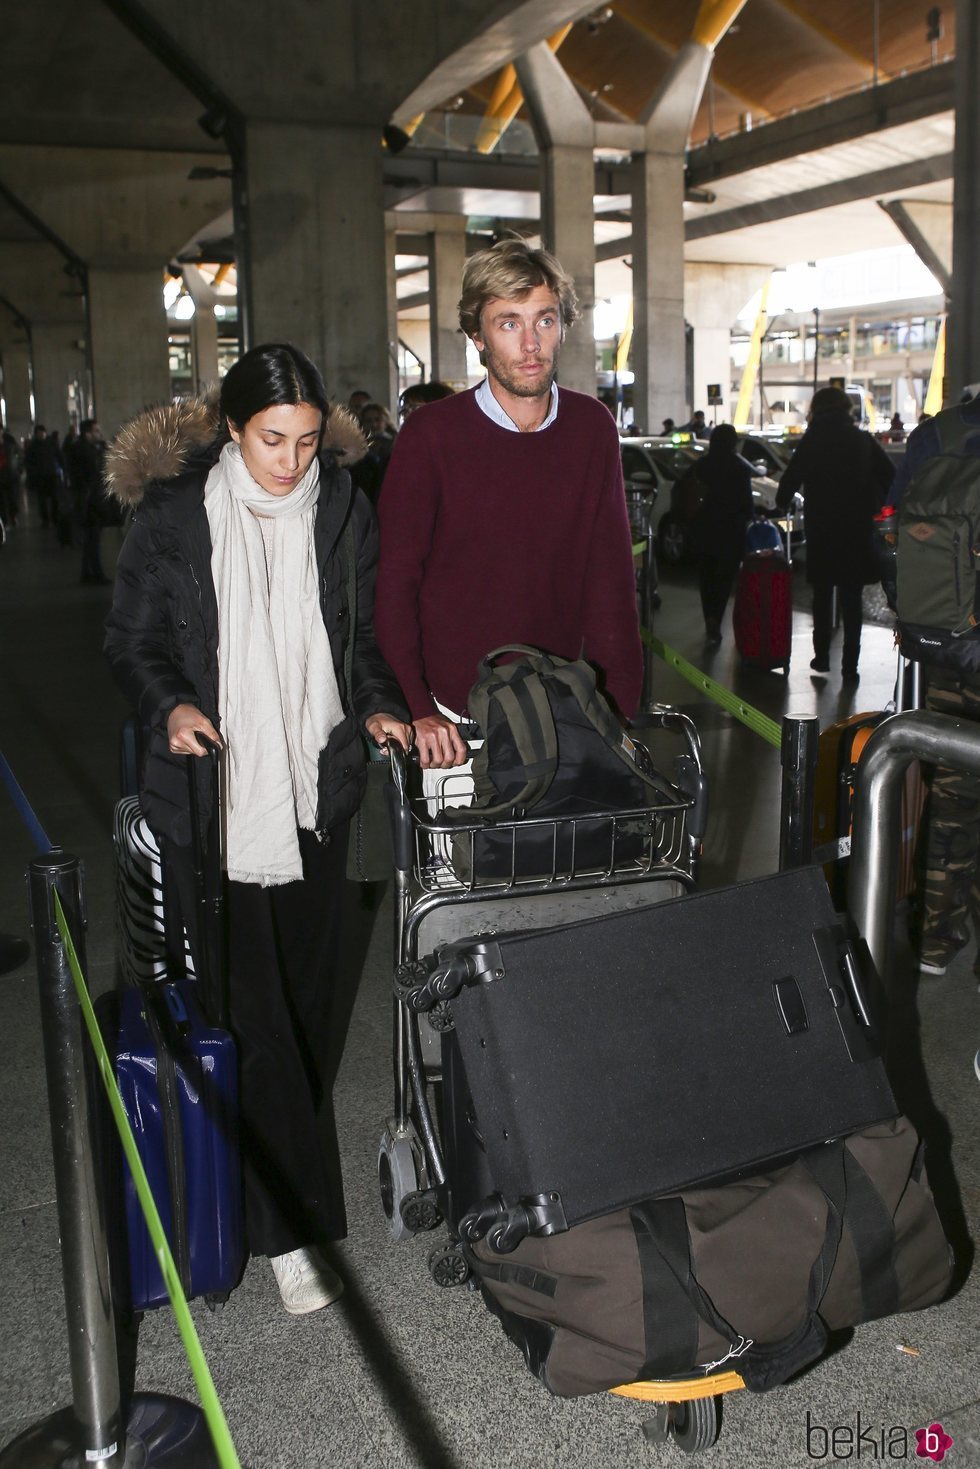 Christian de Hannover y Alessandra de Osma en el aeropuerto de Madrid